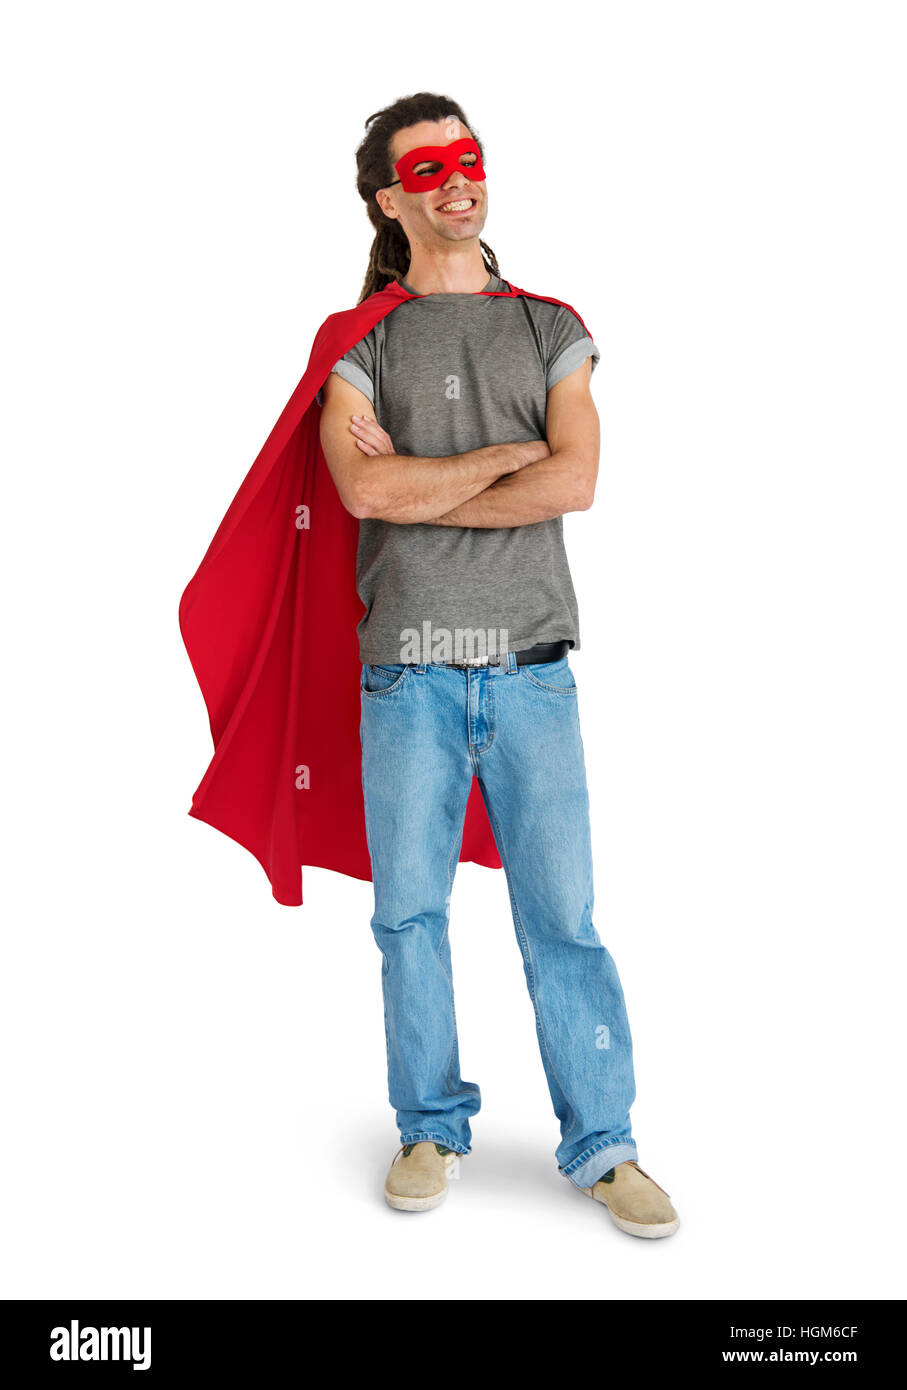 Disfraz de super heroe Imágenes recortadas de stock - Alamy